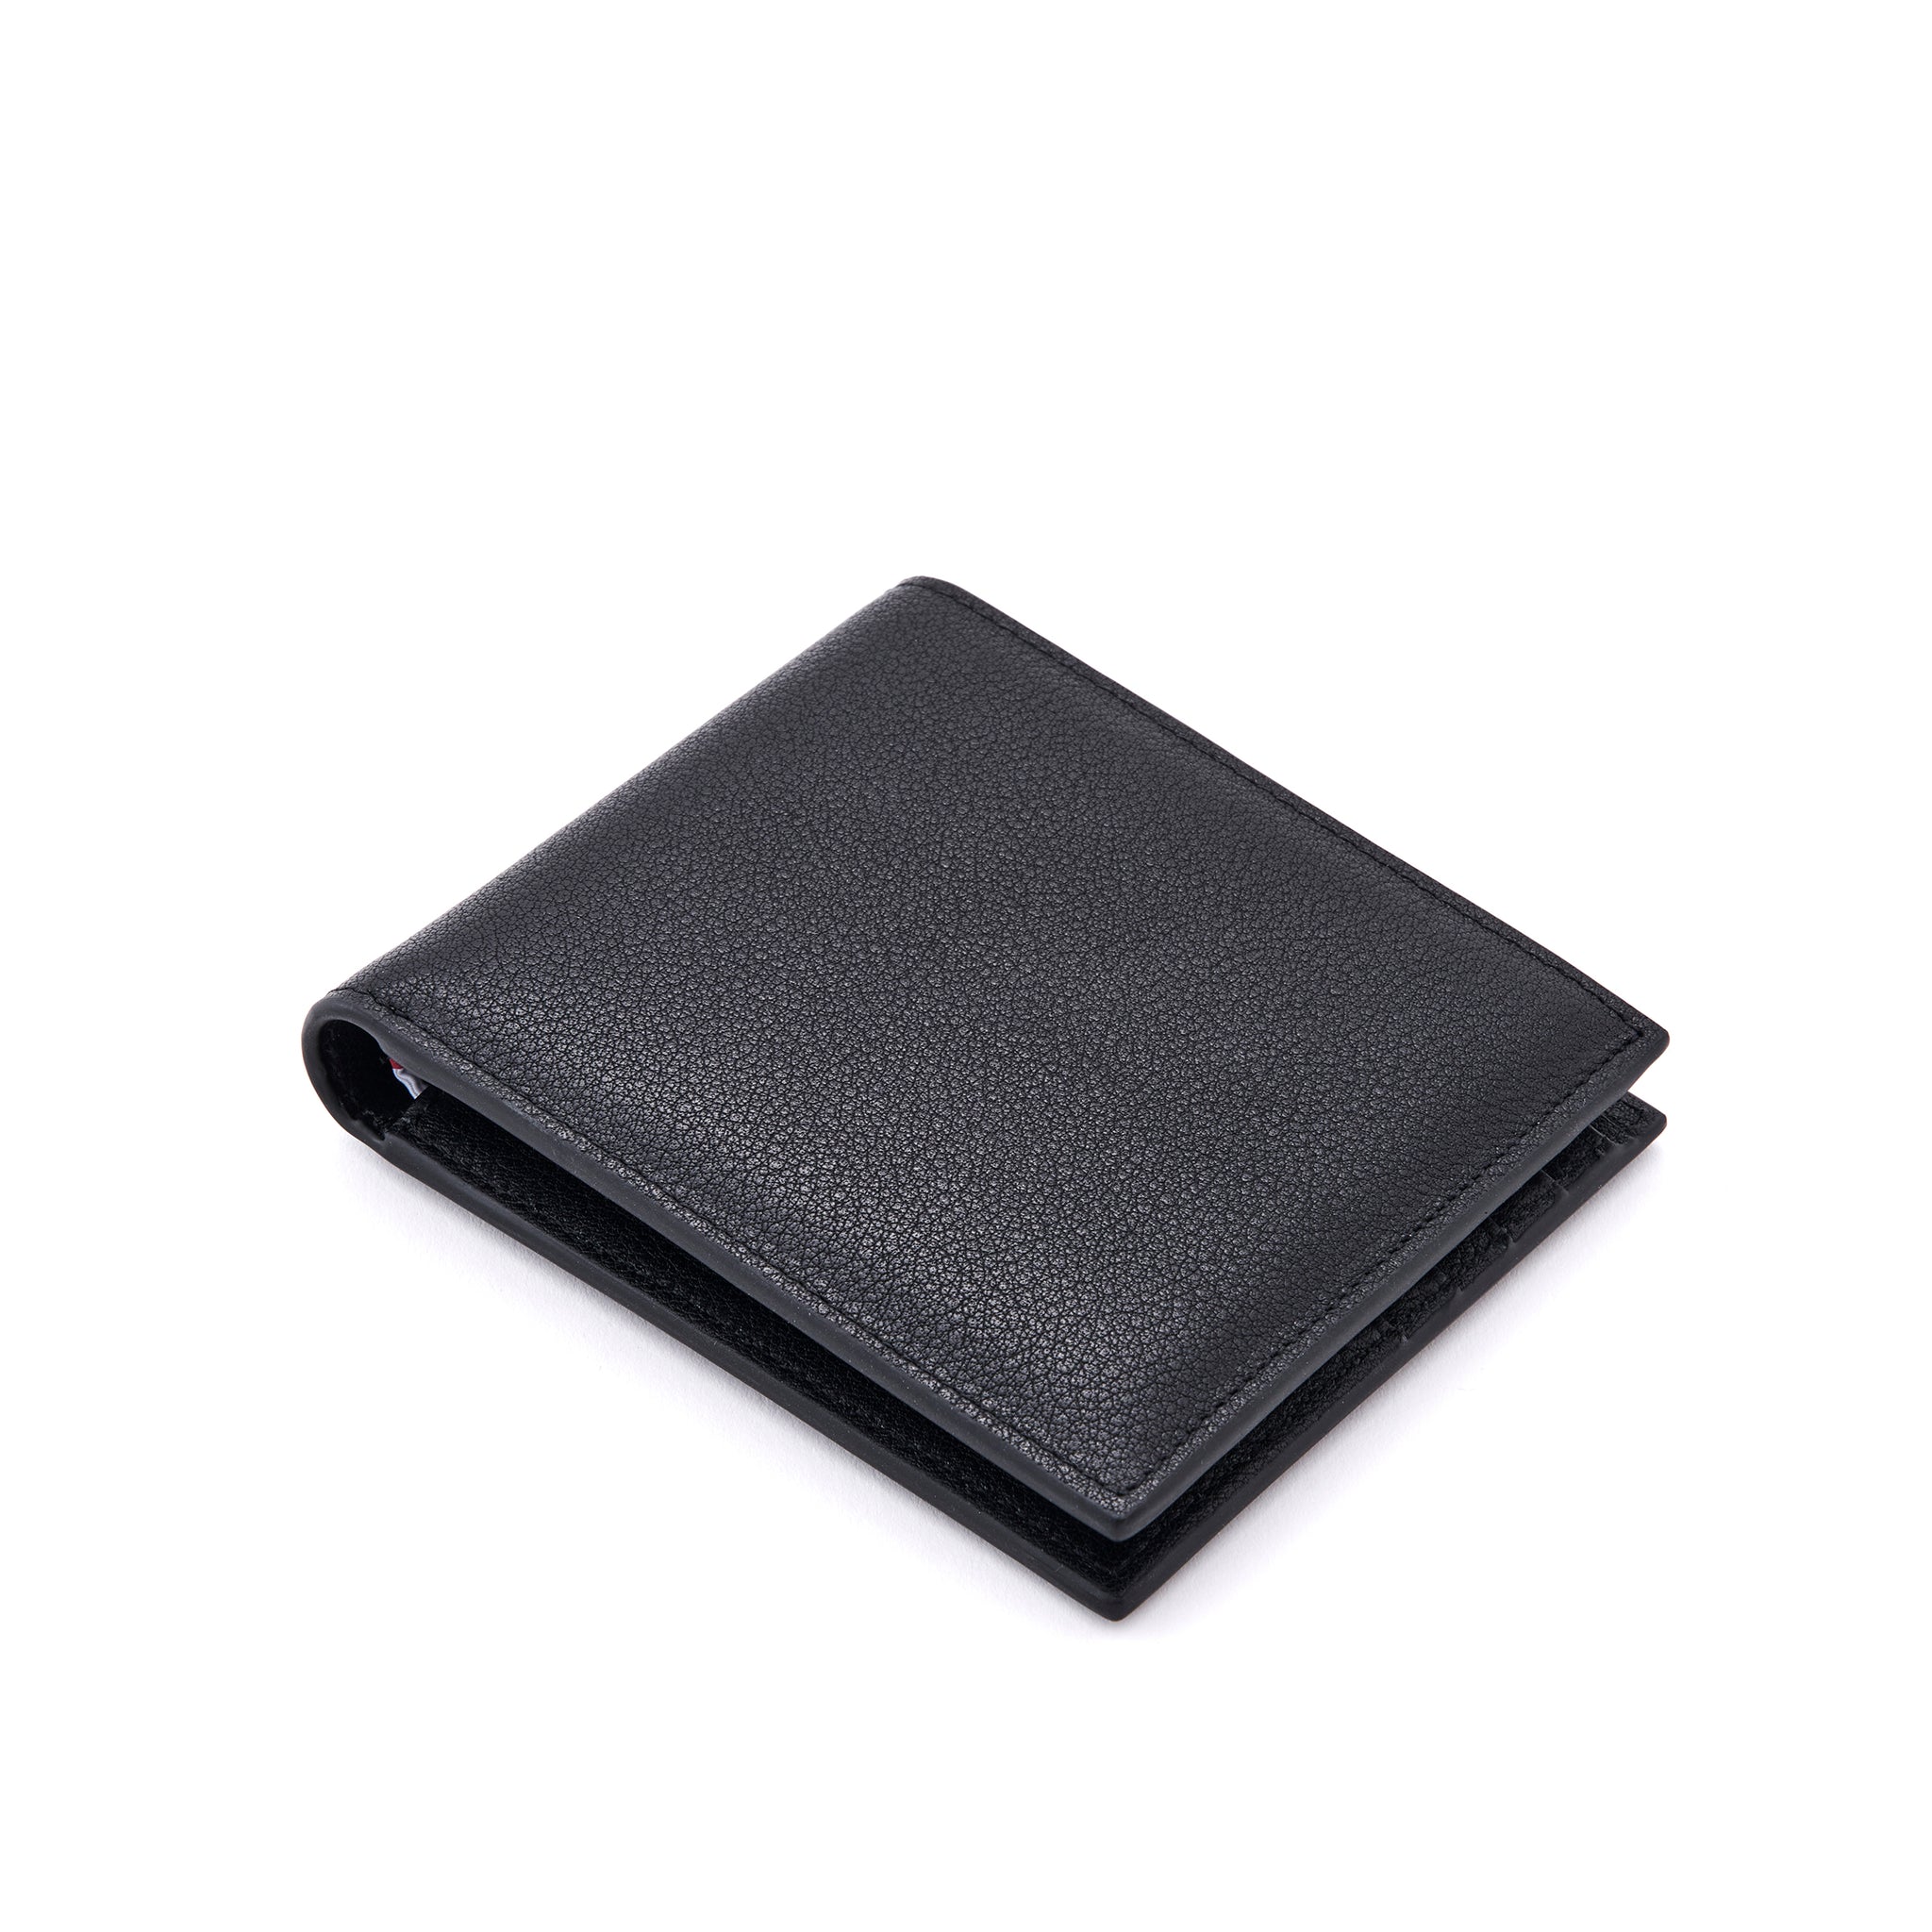 Jean - Leather Wallet in Black